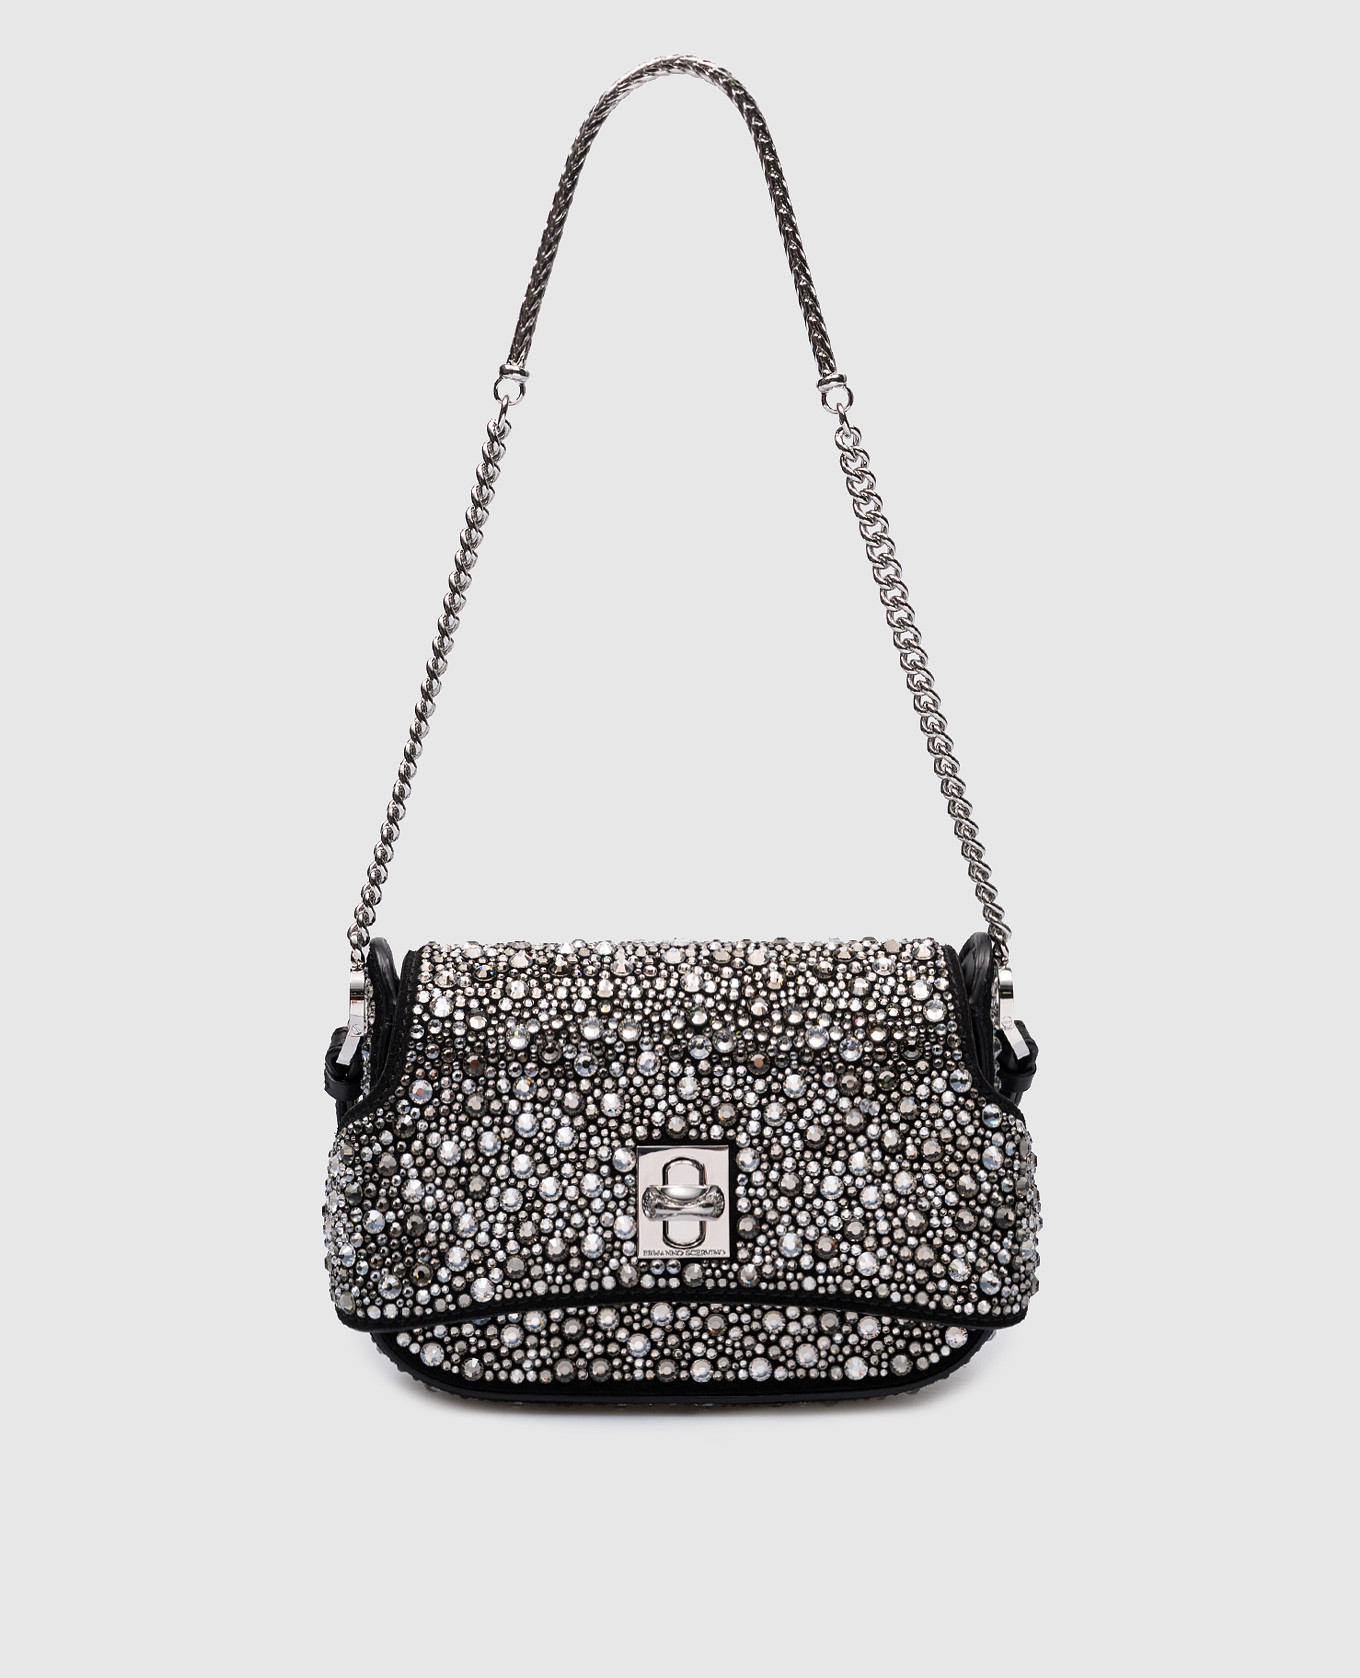 Audrey crystal crossbody bag in black suede